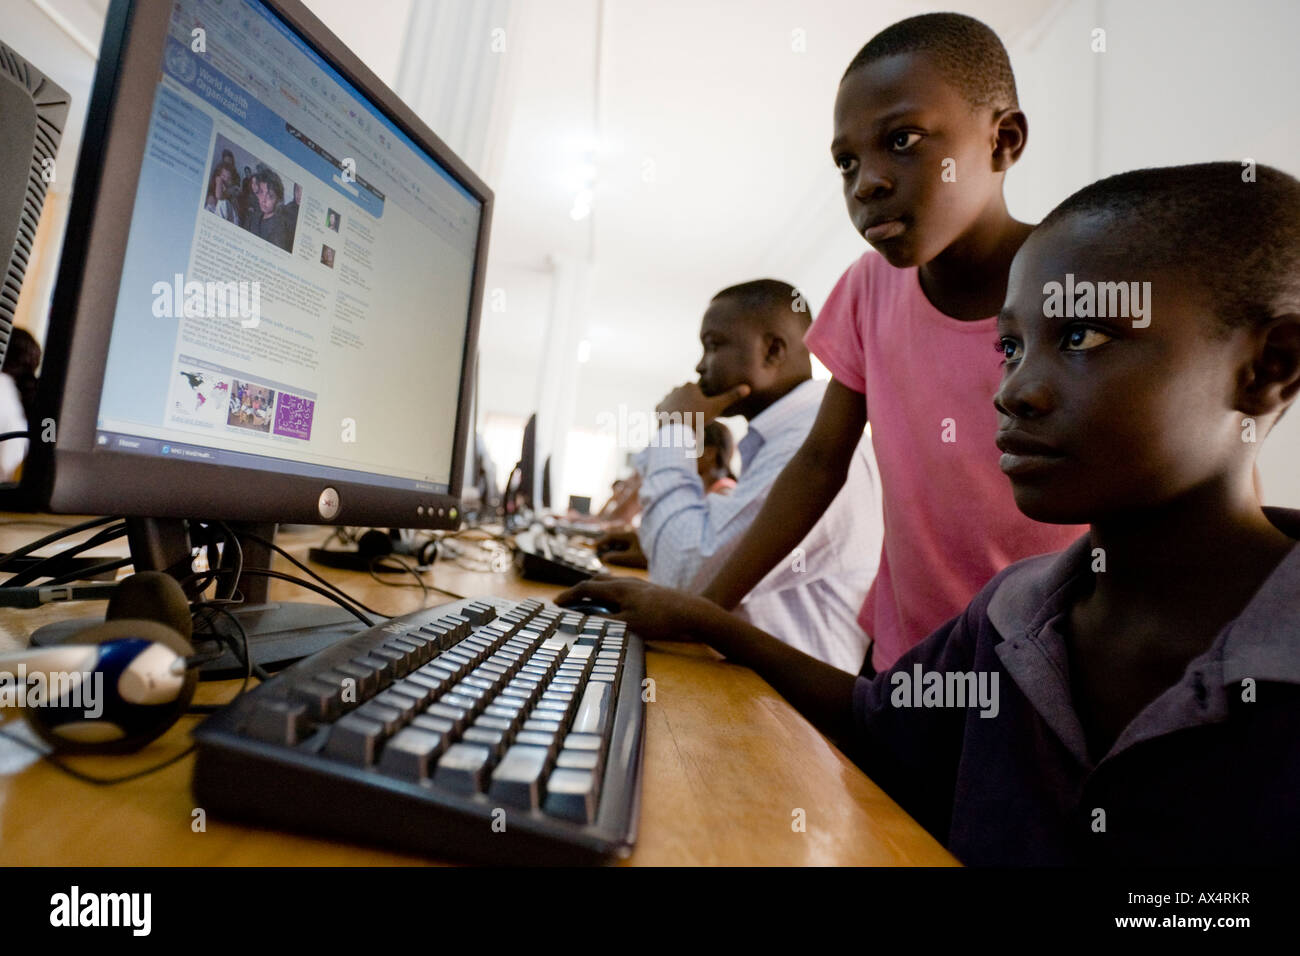 Afrikanische Kinder Surfen im internet Stockfoto